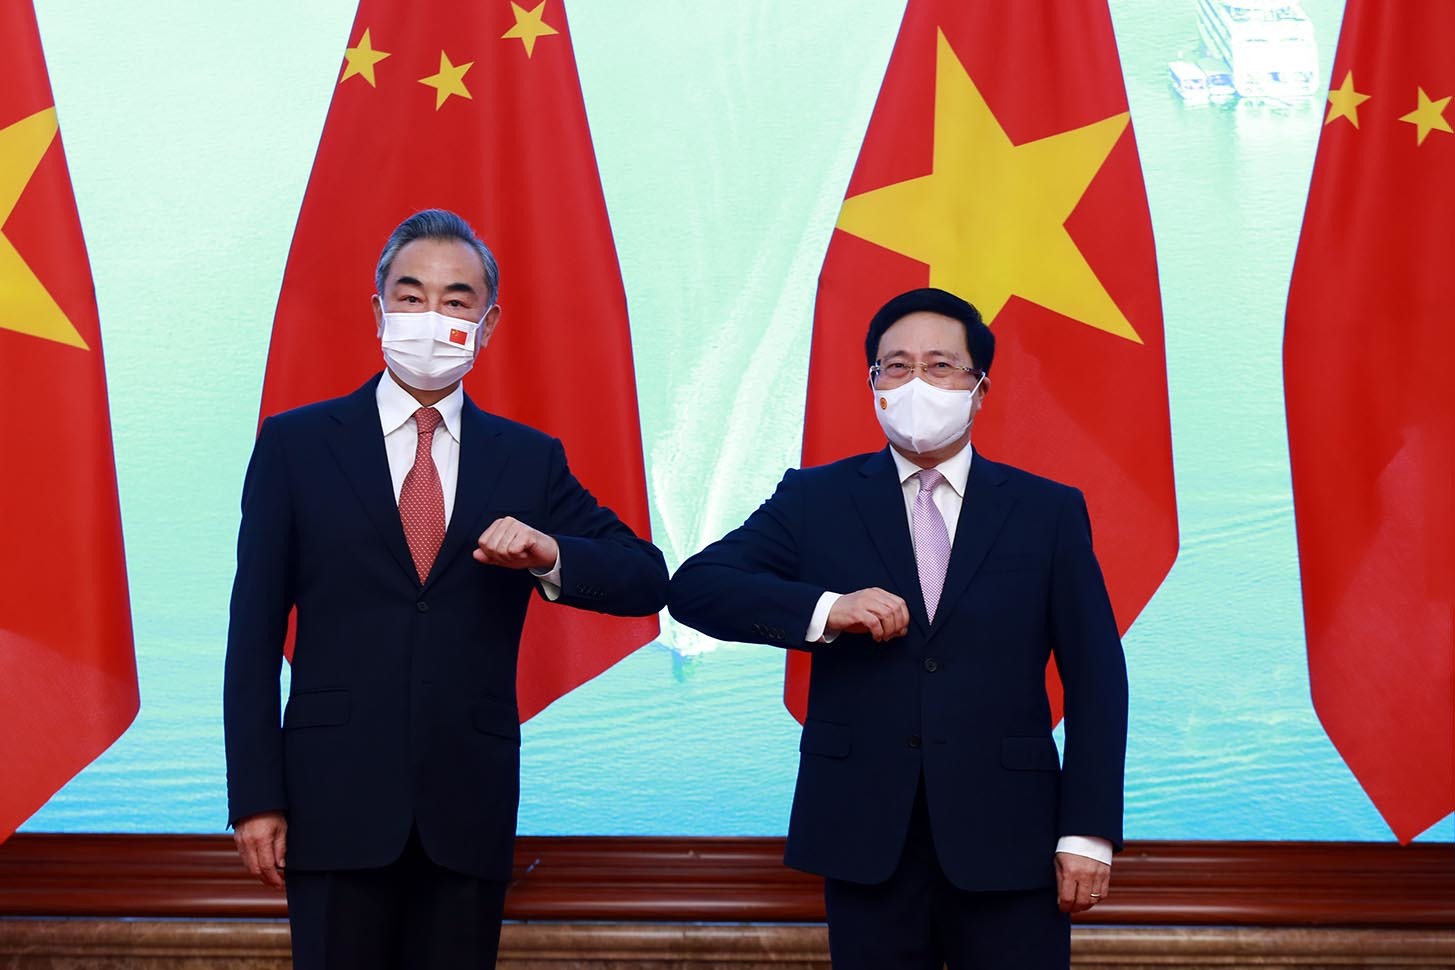 Trung Quốc sẽ viện trợ thêm 3 triệu liều vắc xin cho Việt Nam trong năm nay